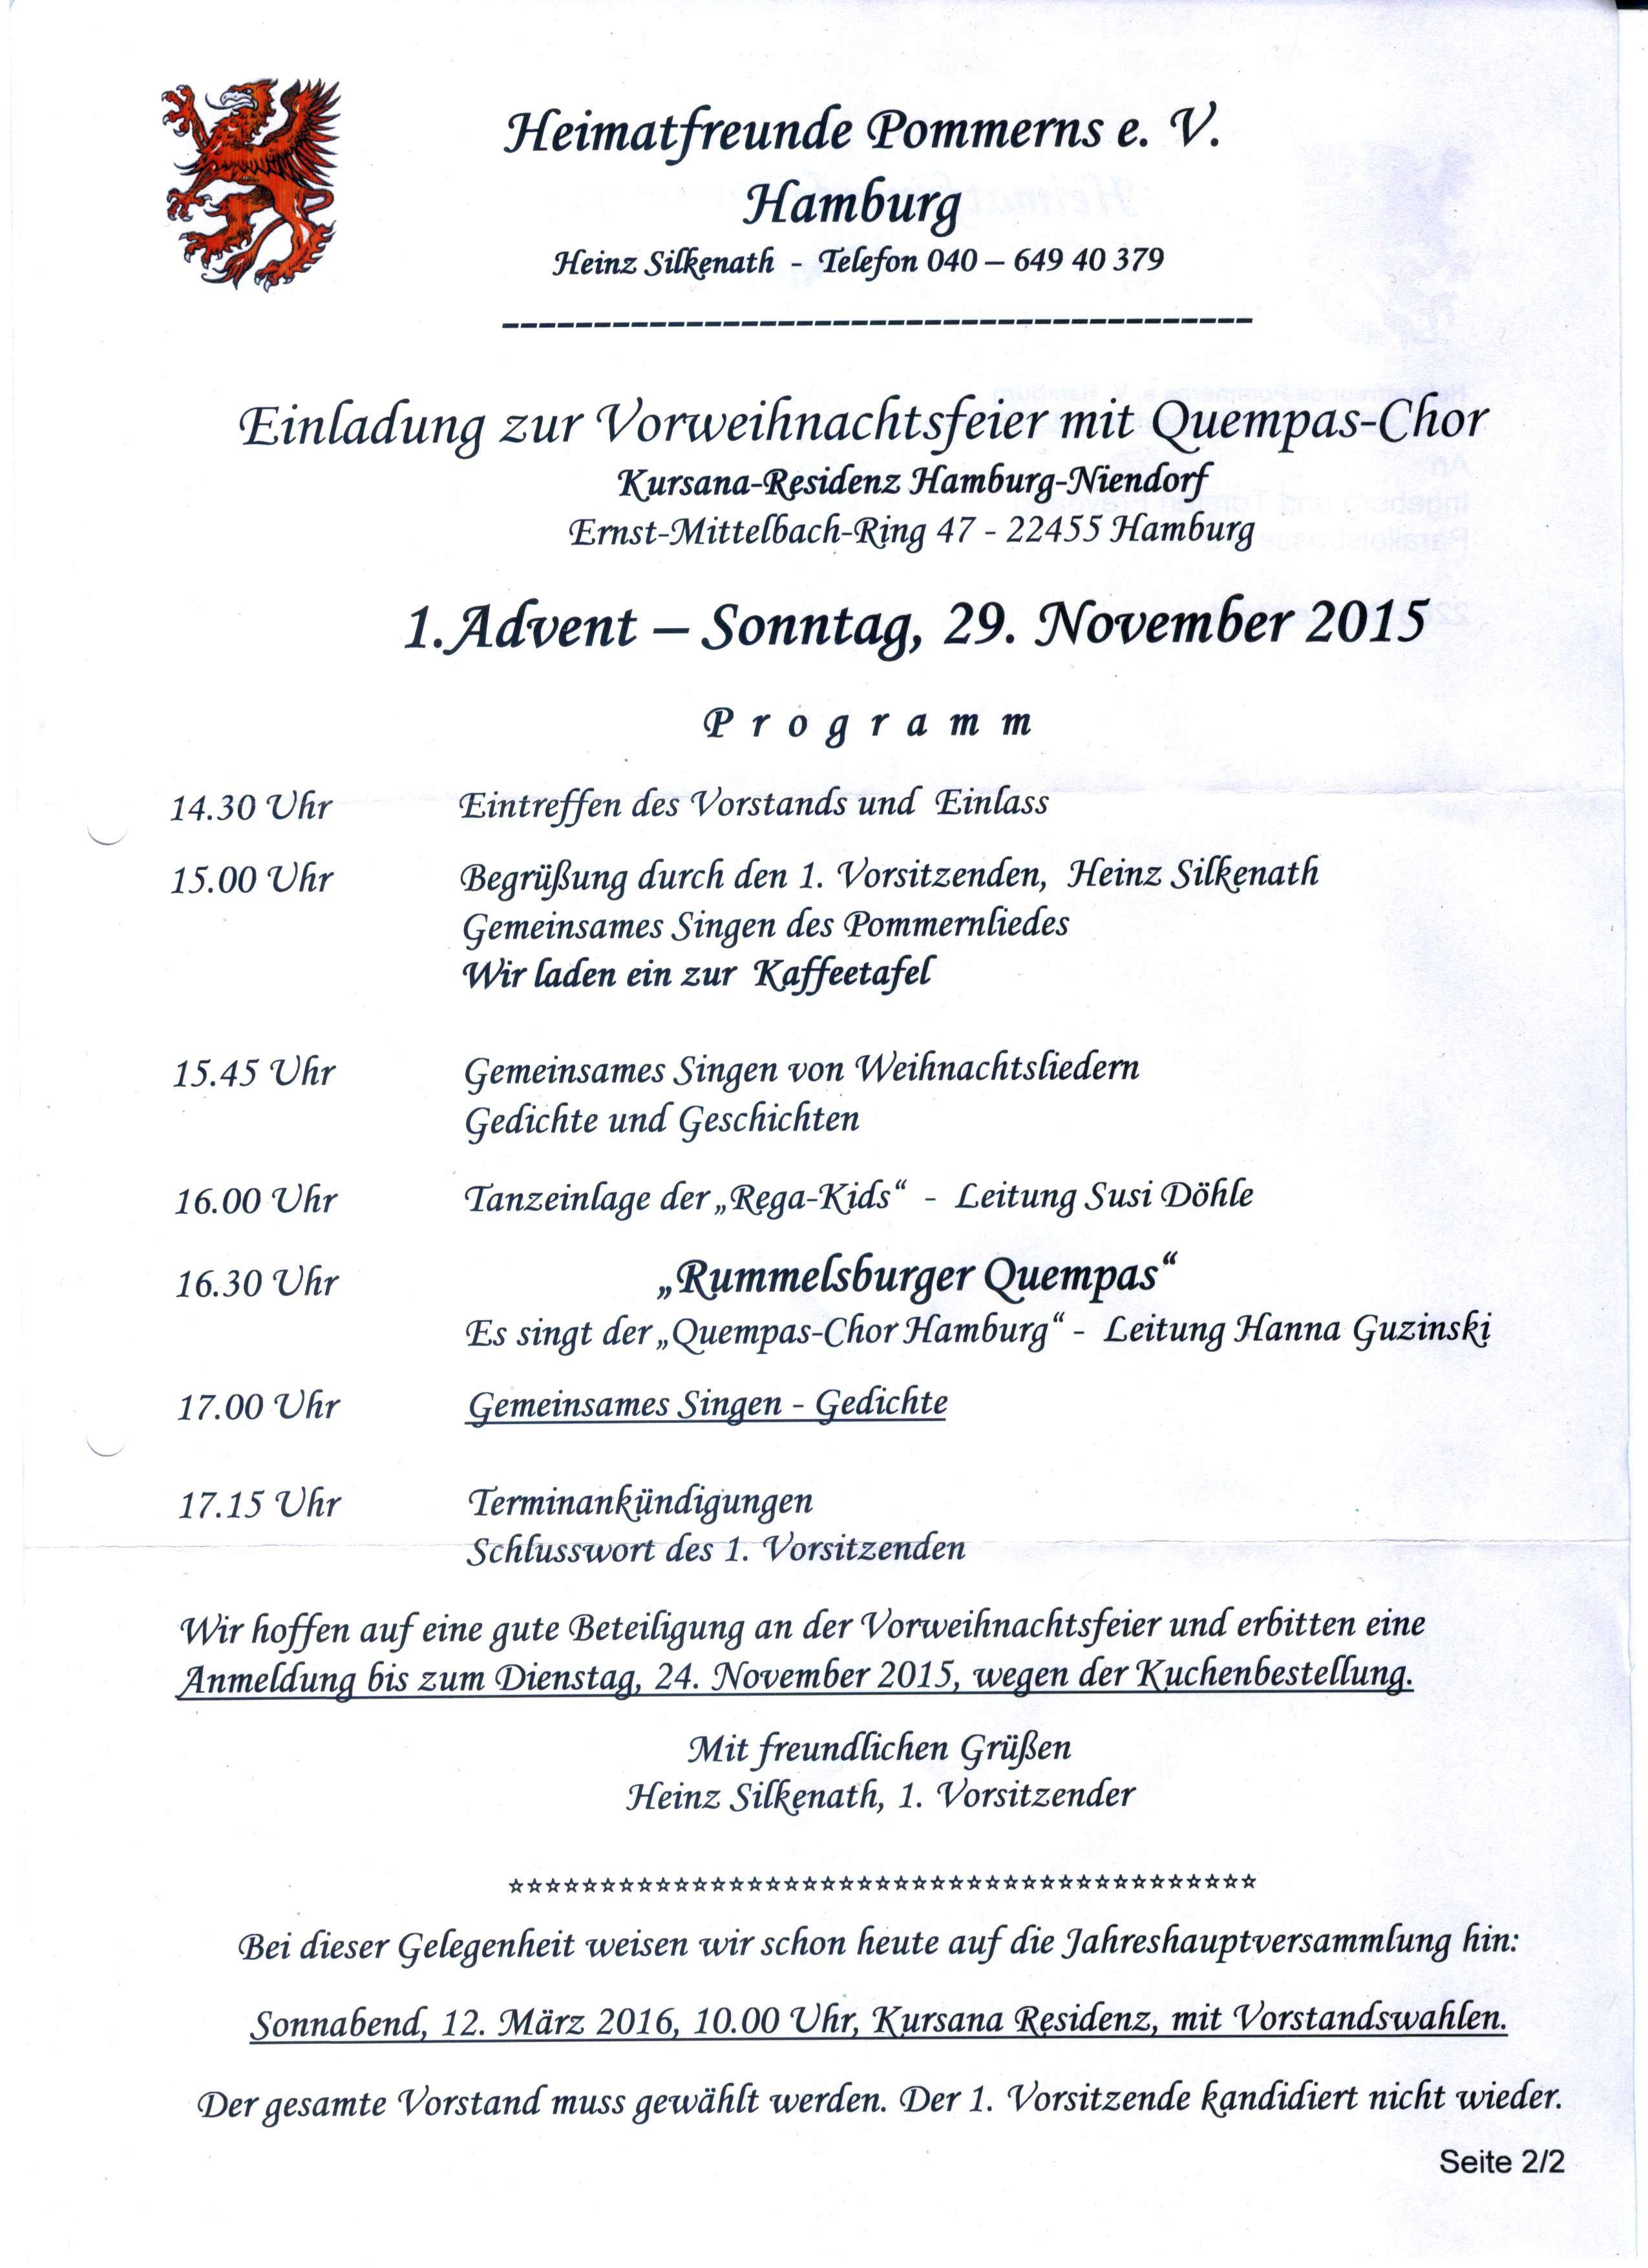 Einladung zur Vorweihnachtsfeier der Heimatfreunde Pommerns am 29.11.2015